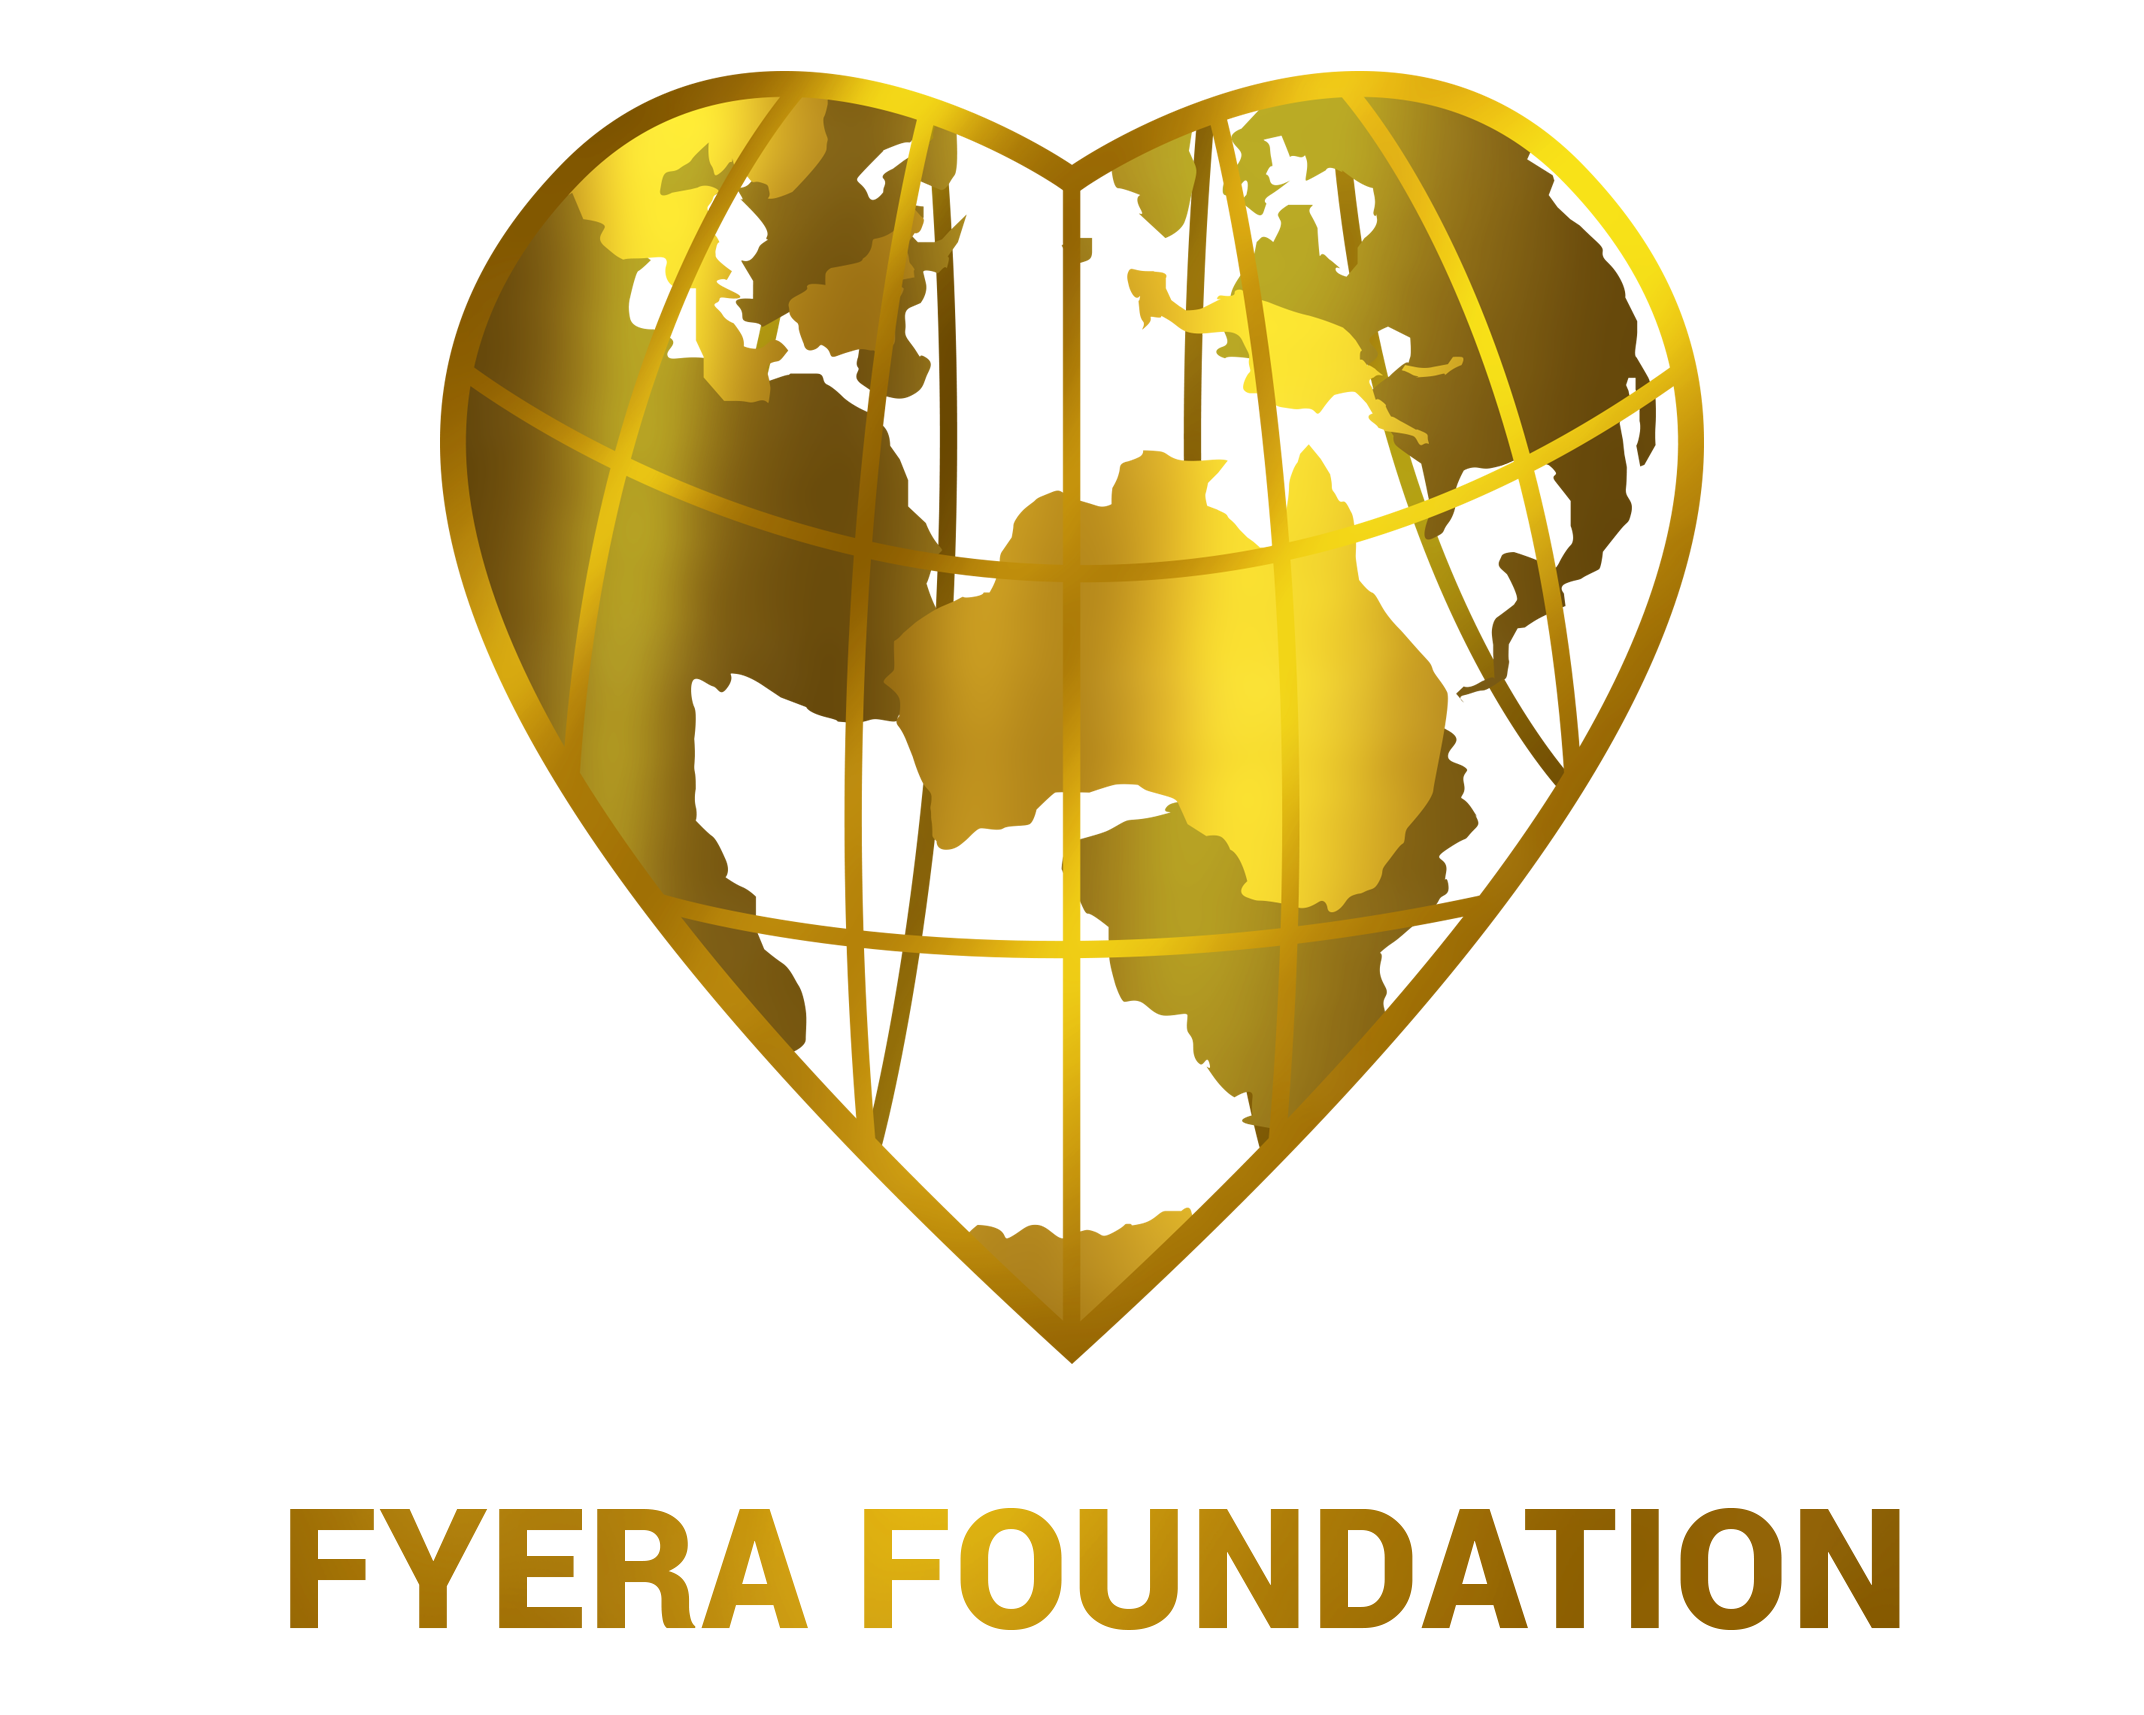 Fyera Foundation